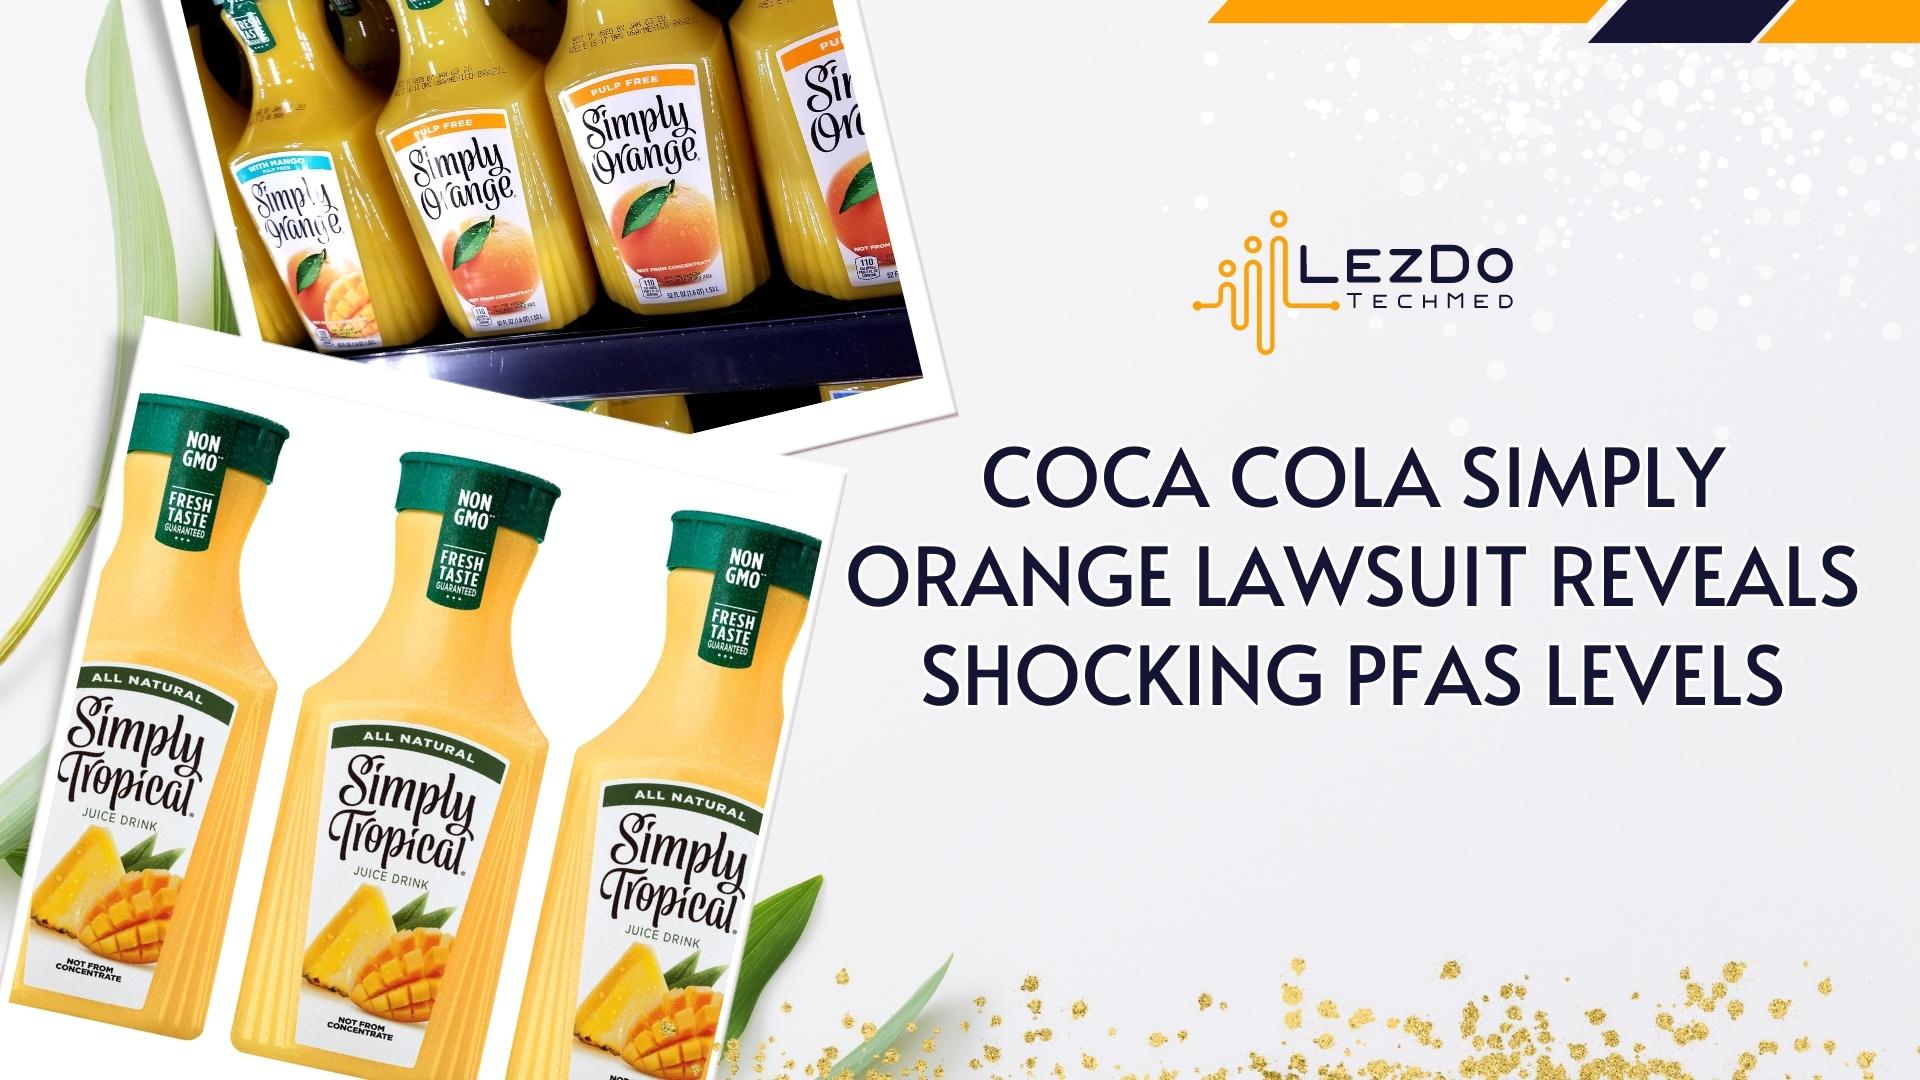 Coca-Cola Simply Orange Lawsuit Reveals Shocking PFAS Levels